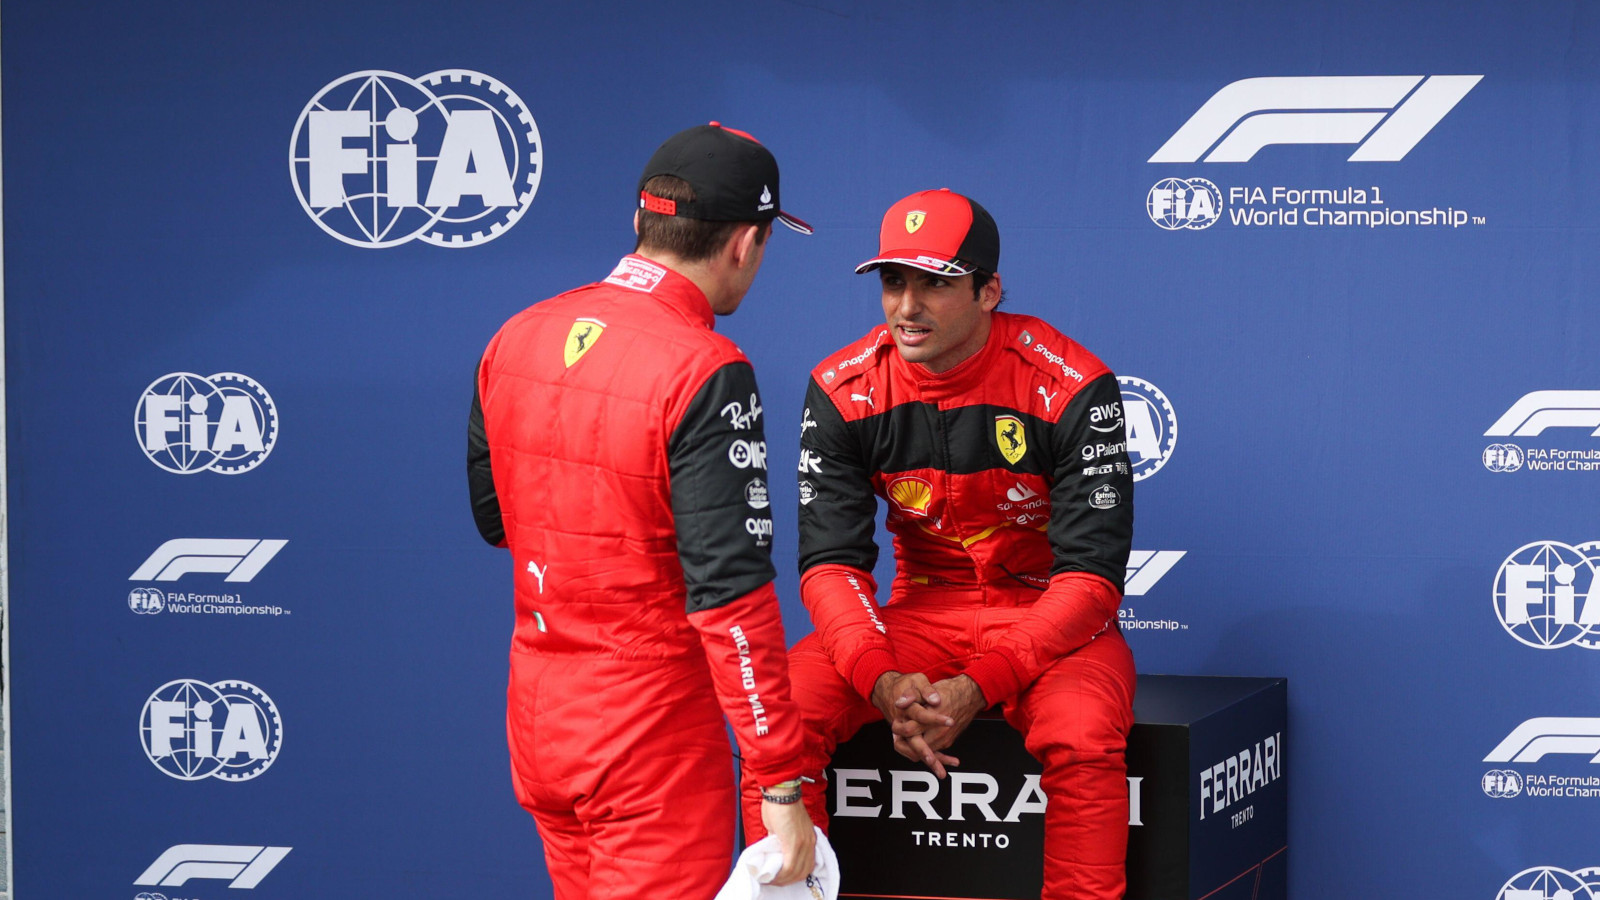 Charlesas Leclercas kalbėjosi su Carlosu Sainzu po kvalifikacijos į Vengrijos GP.  Vengrija 2022 m. liepos mėn